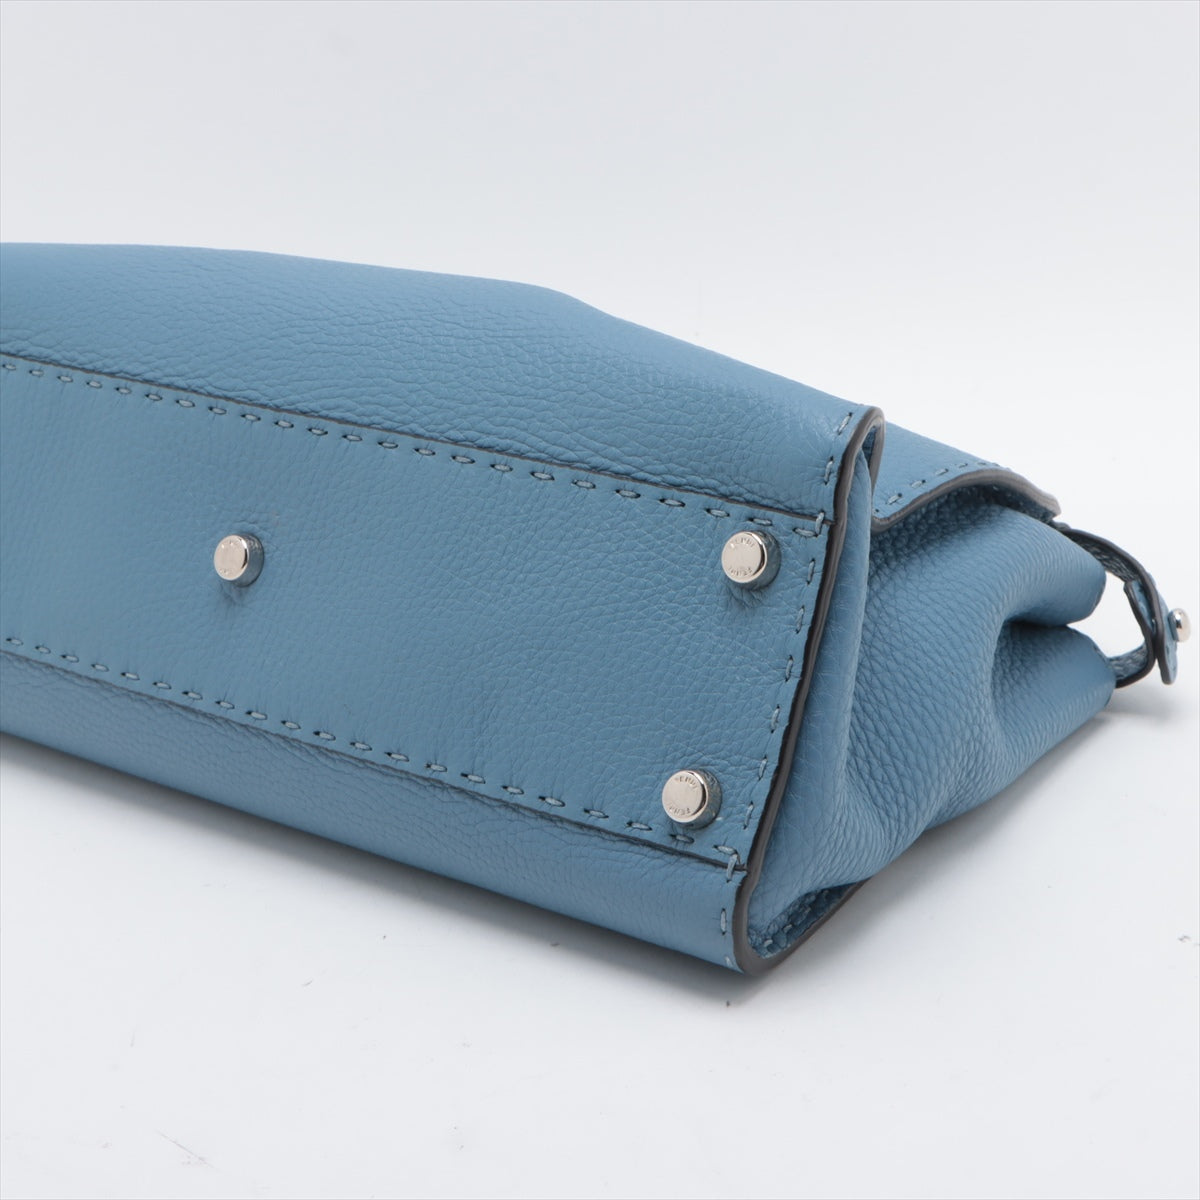 Fendi PEEKABOO REGULAR Selleria Leather Handbag Blue 8BN290